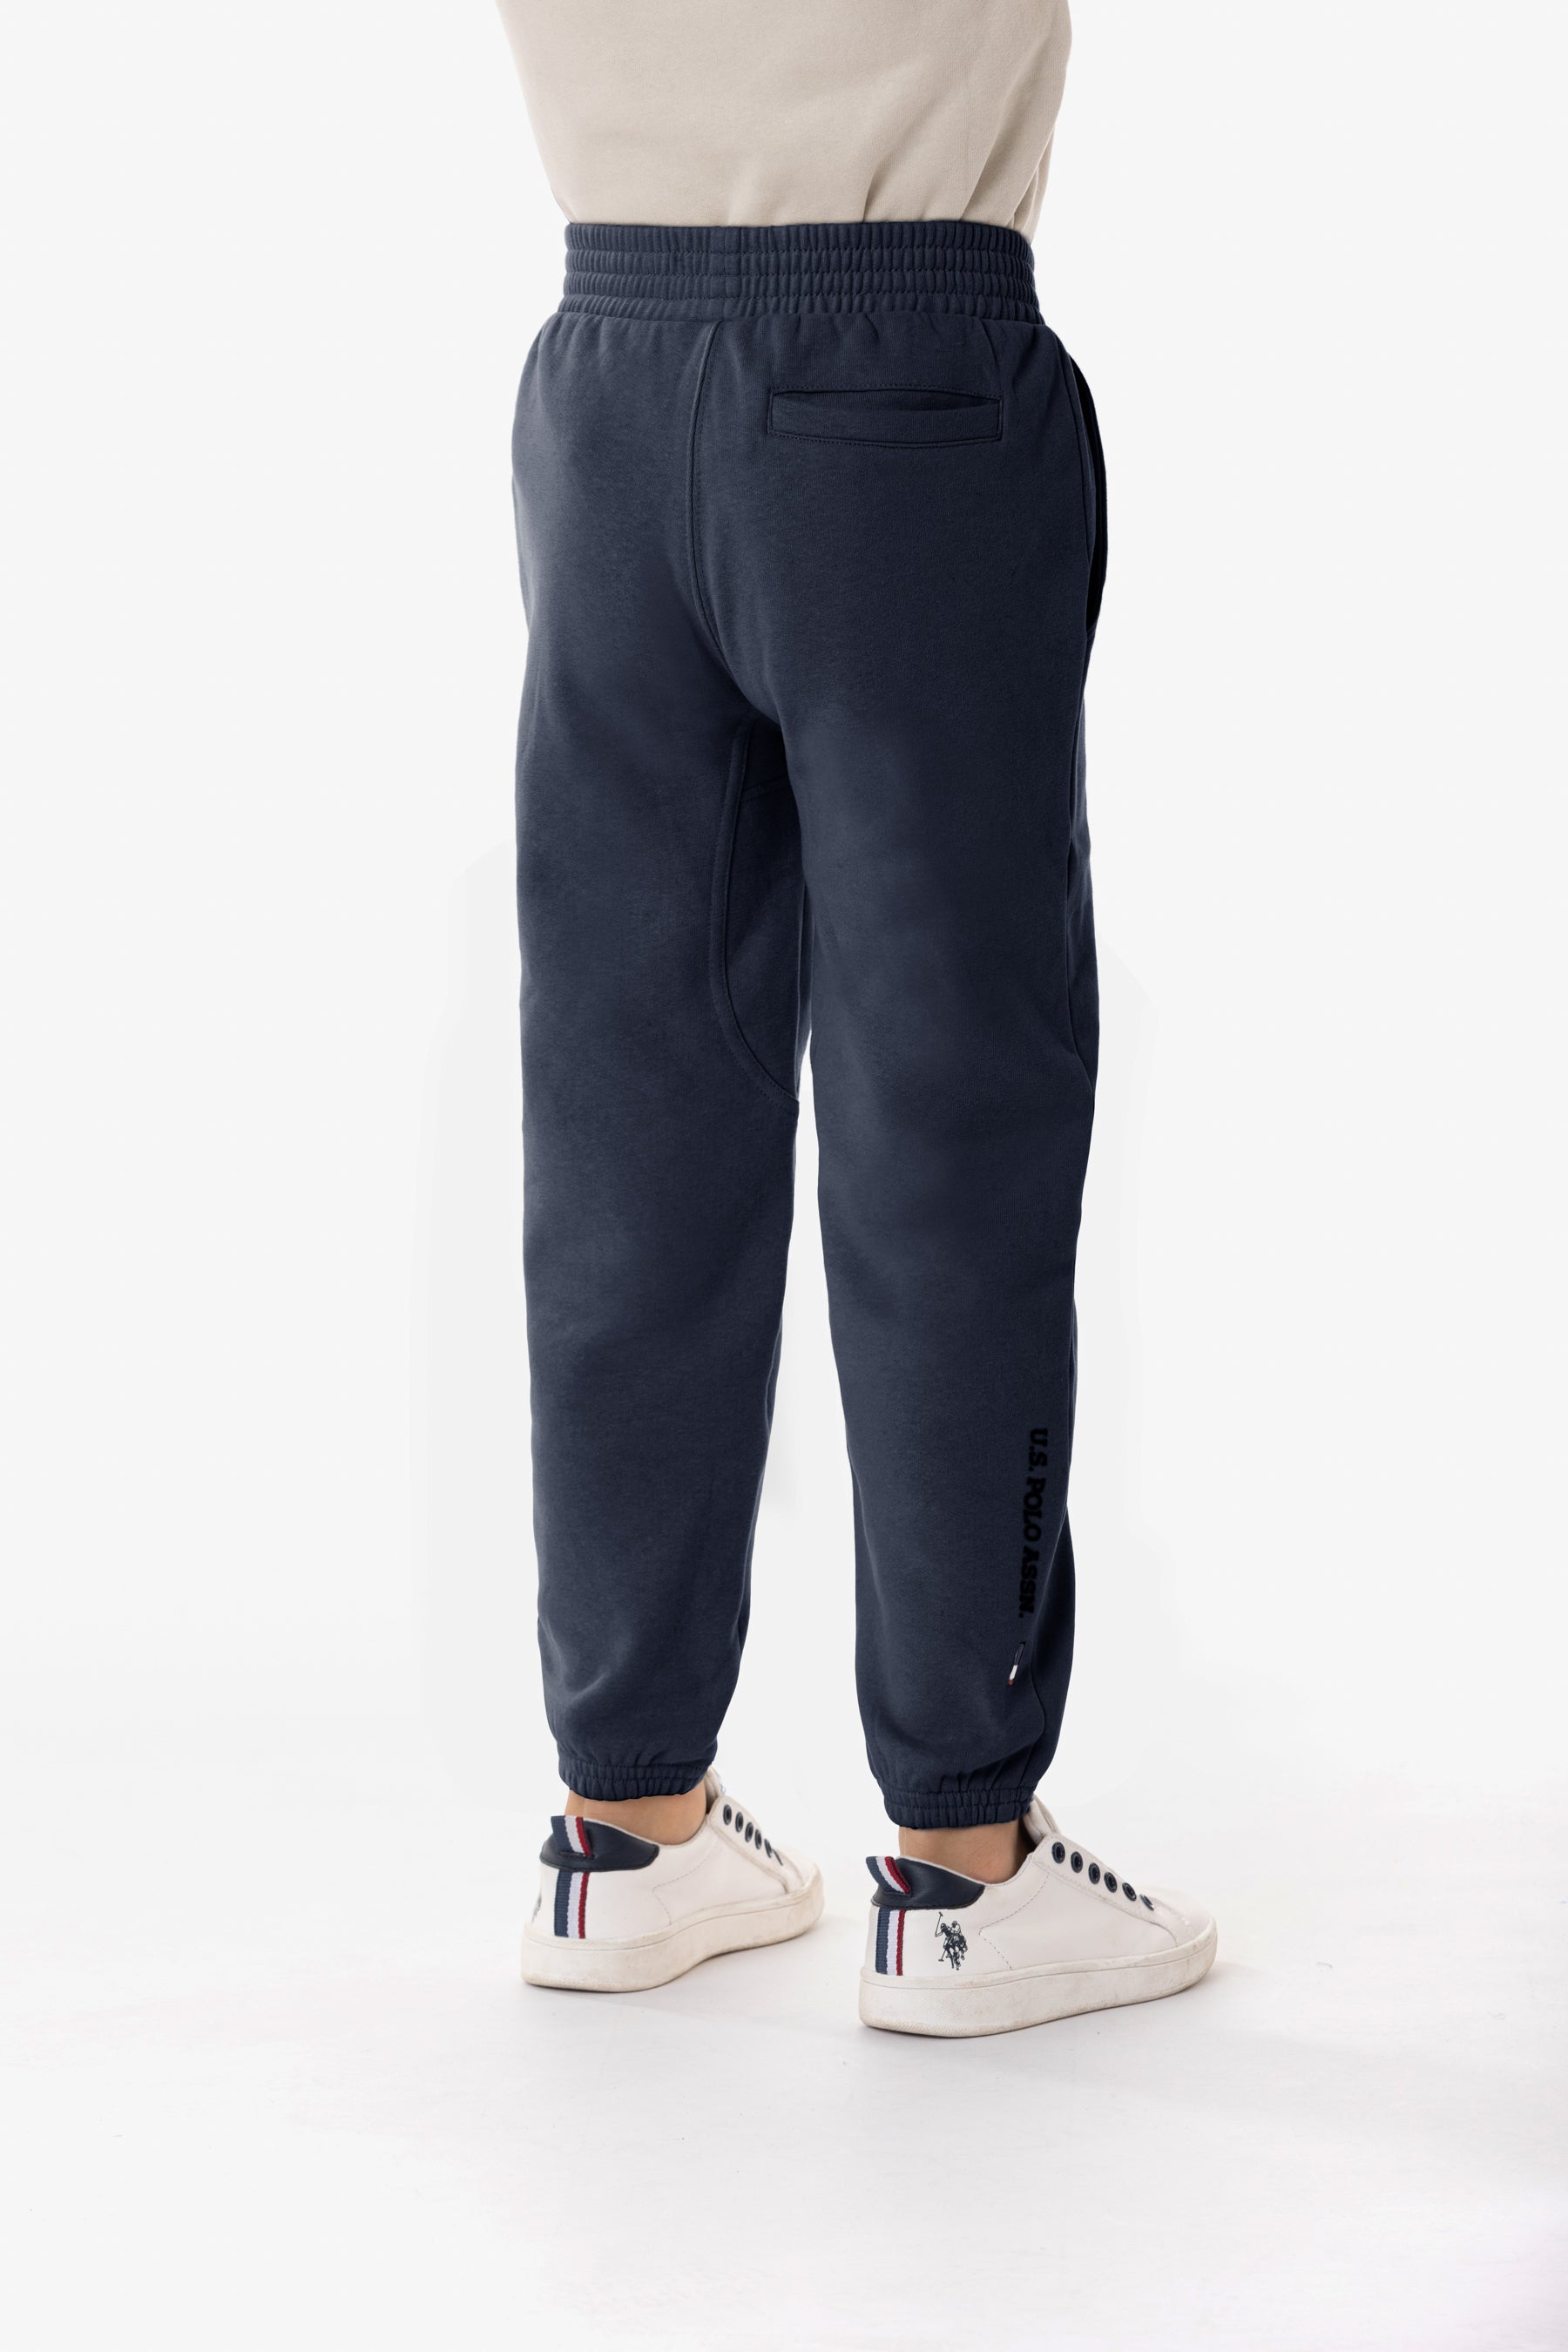 Pantalone sportivo misto cotone con logo U.S. Polo Assn.